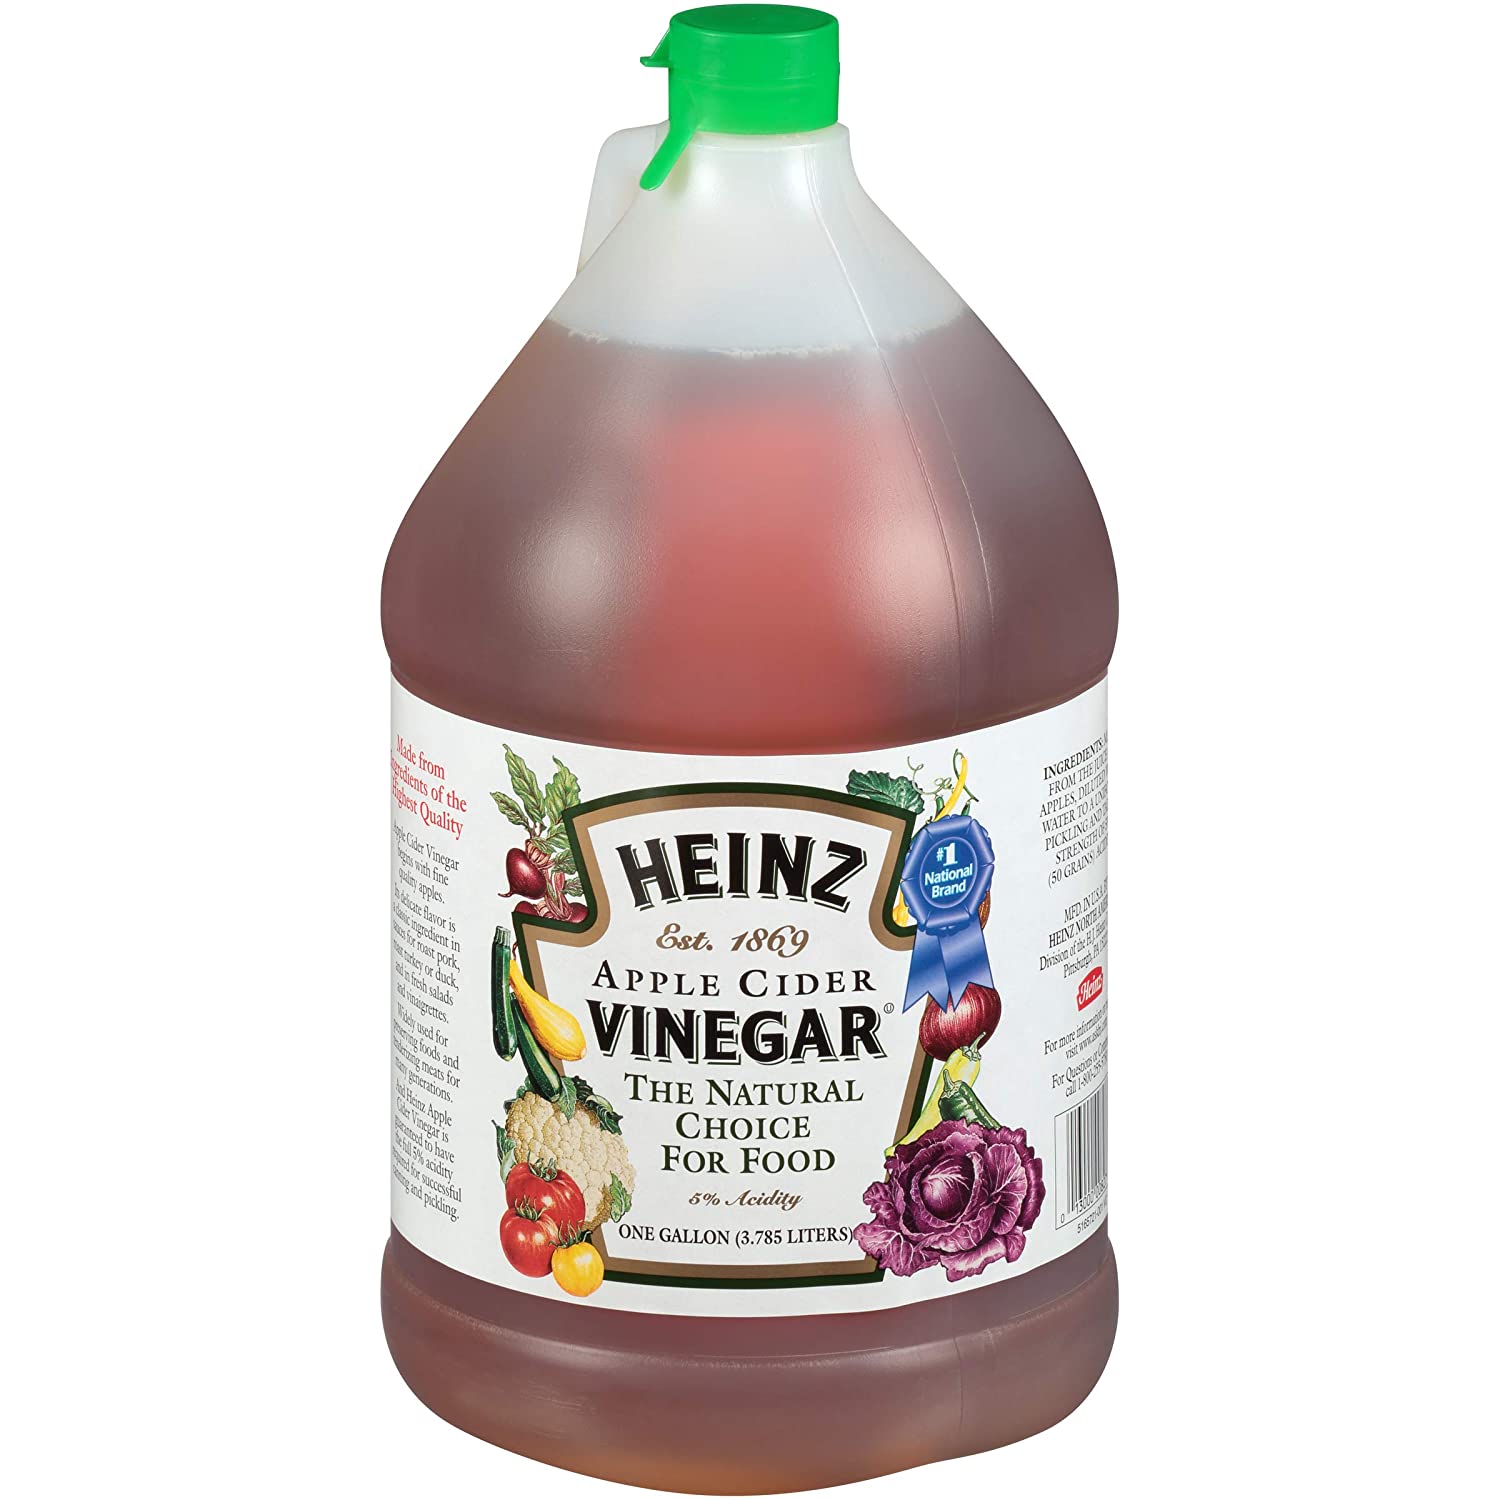 Heinz Apple Cider Vinegar, 1 gal. Jugs (*Pack of 4) $8.25 (as low as $7.01 w/15% S&S)